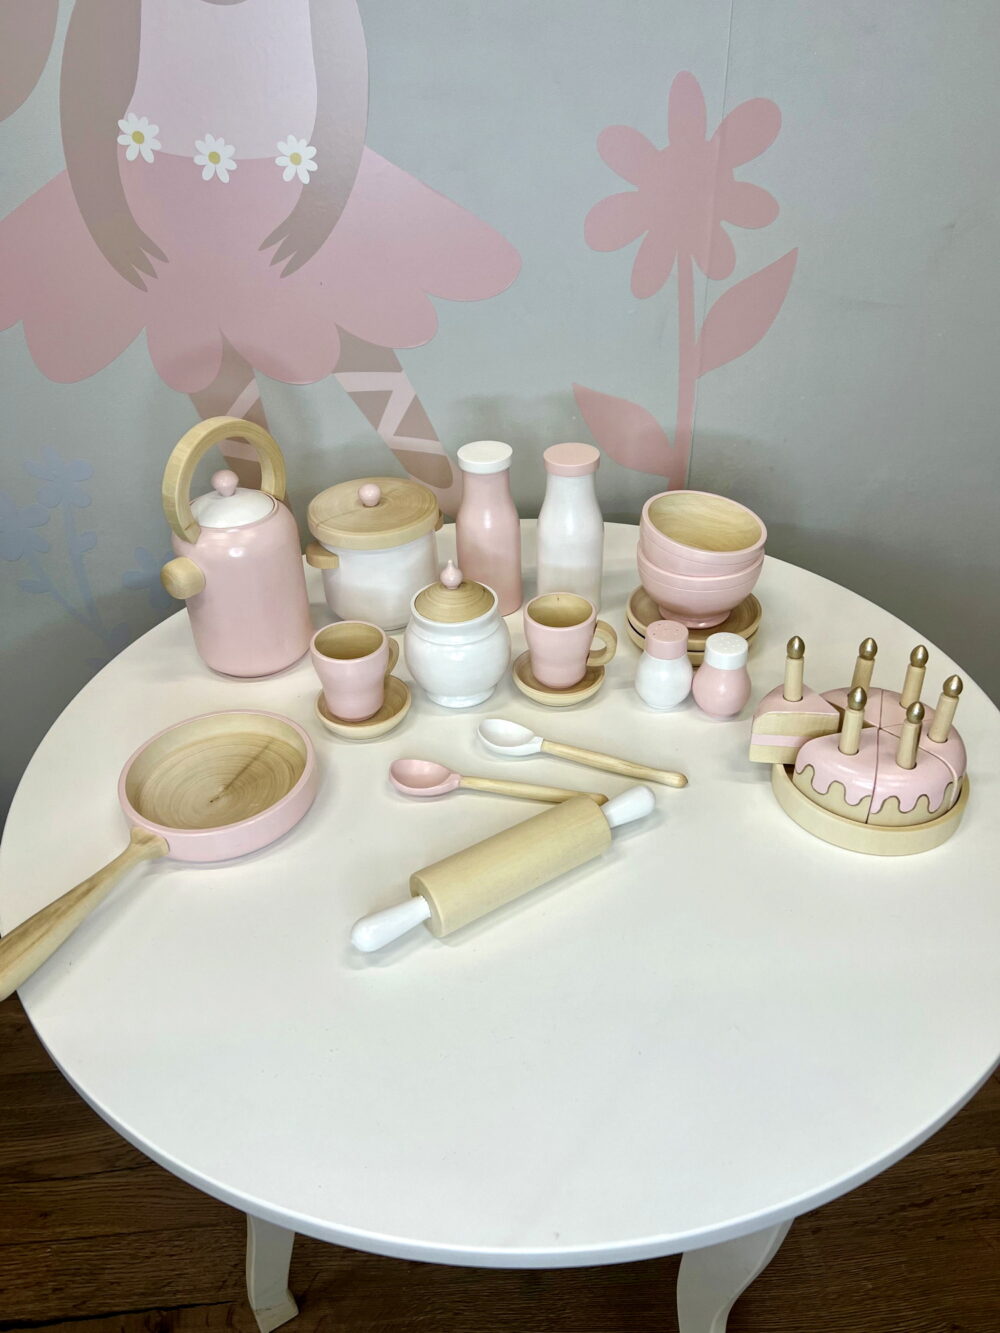 Набор детской игровой посуды розовый, полный комплект, общий вид